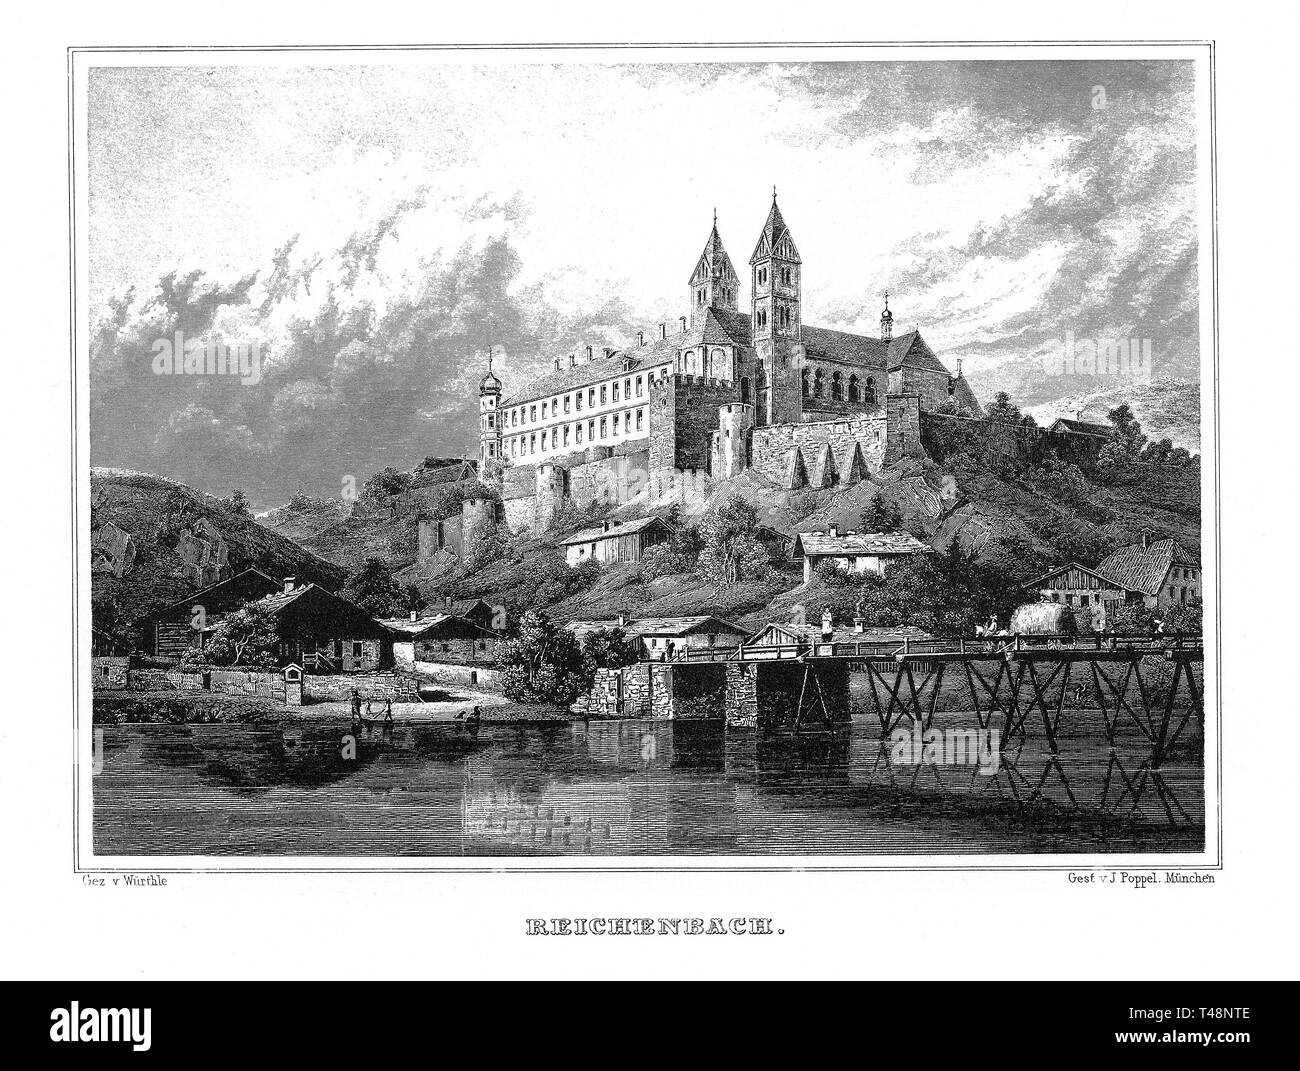 Anzeigen von Reichenbach, Zeichnung von Wurthle, Stahlstich von J. Poppel, 1840-1854, Königreich Bayern, Deutschland Stockfoto